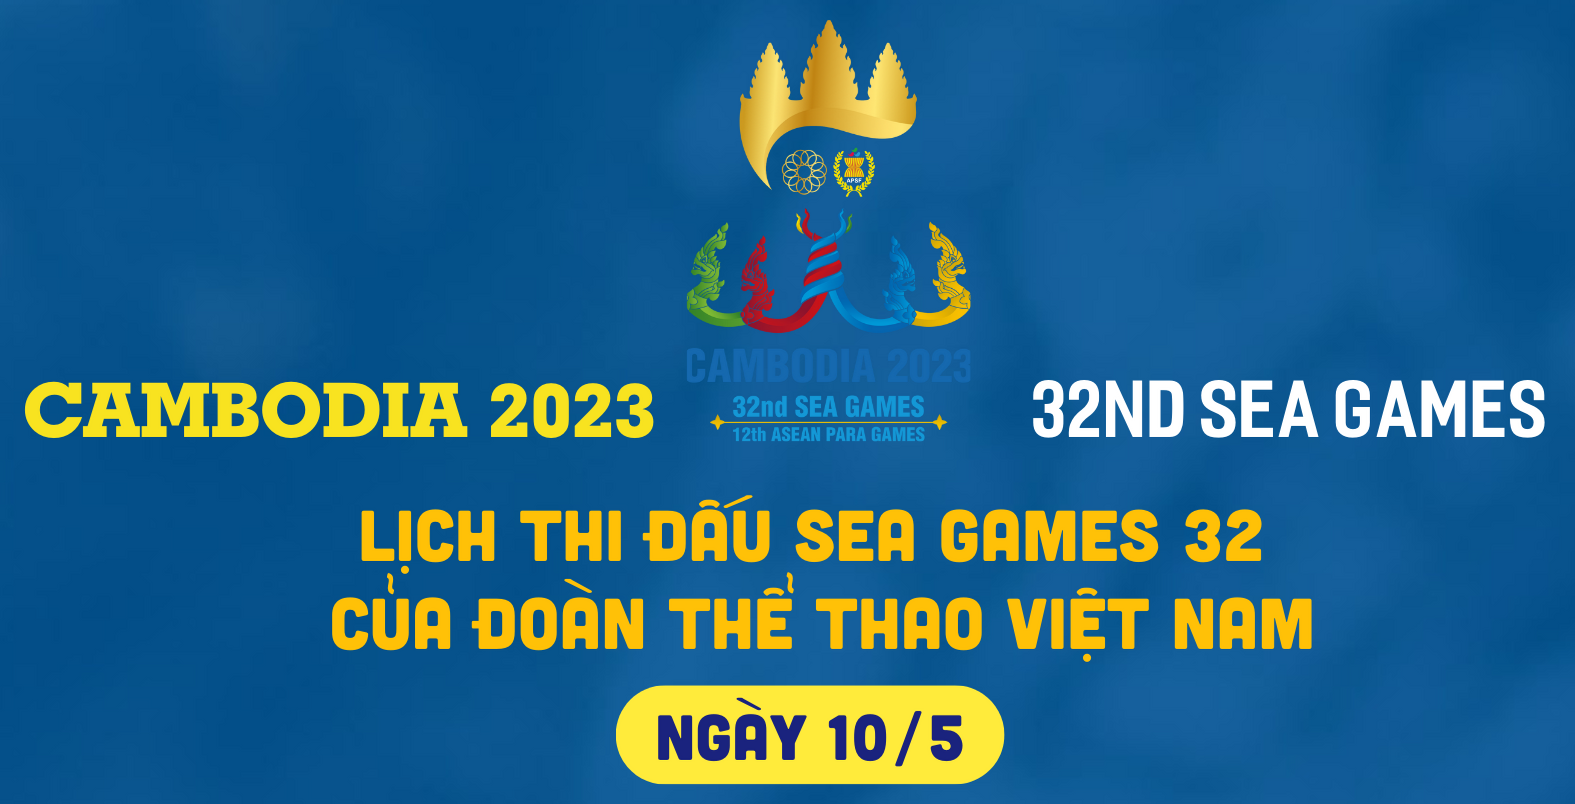 Lịch thi đấu của đoàn thể thao Việt Nam tại SEA Games 32 ngày 10/5